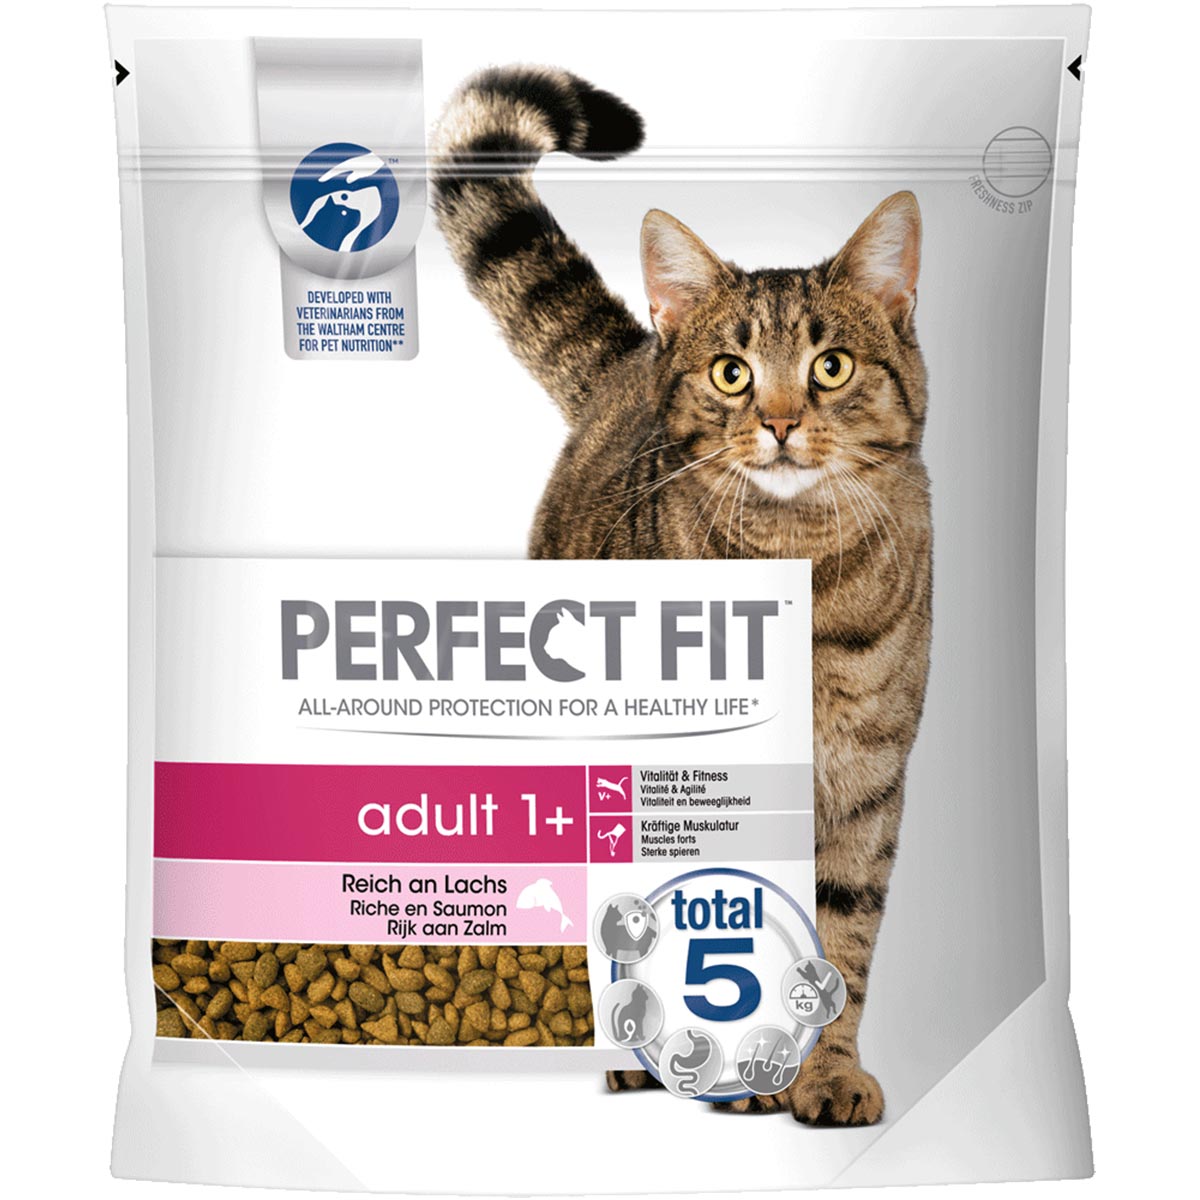 Perfect Fit Katzenfutter Adult 1+ reich an Lachs 1,4kg